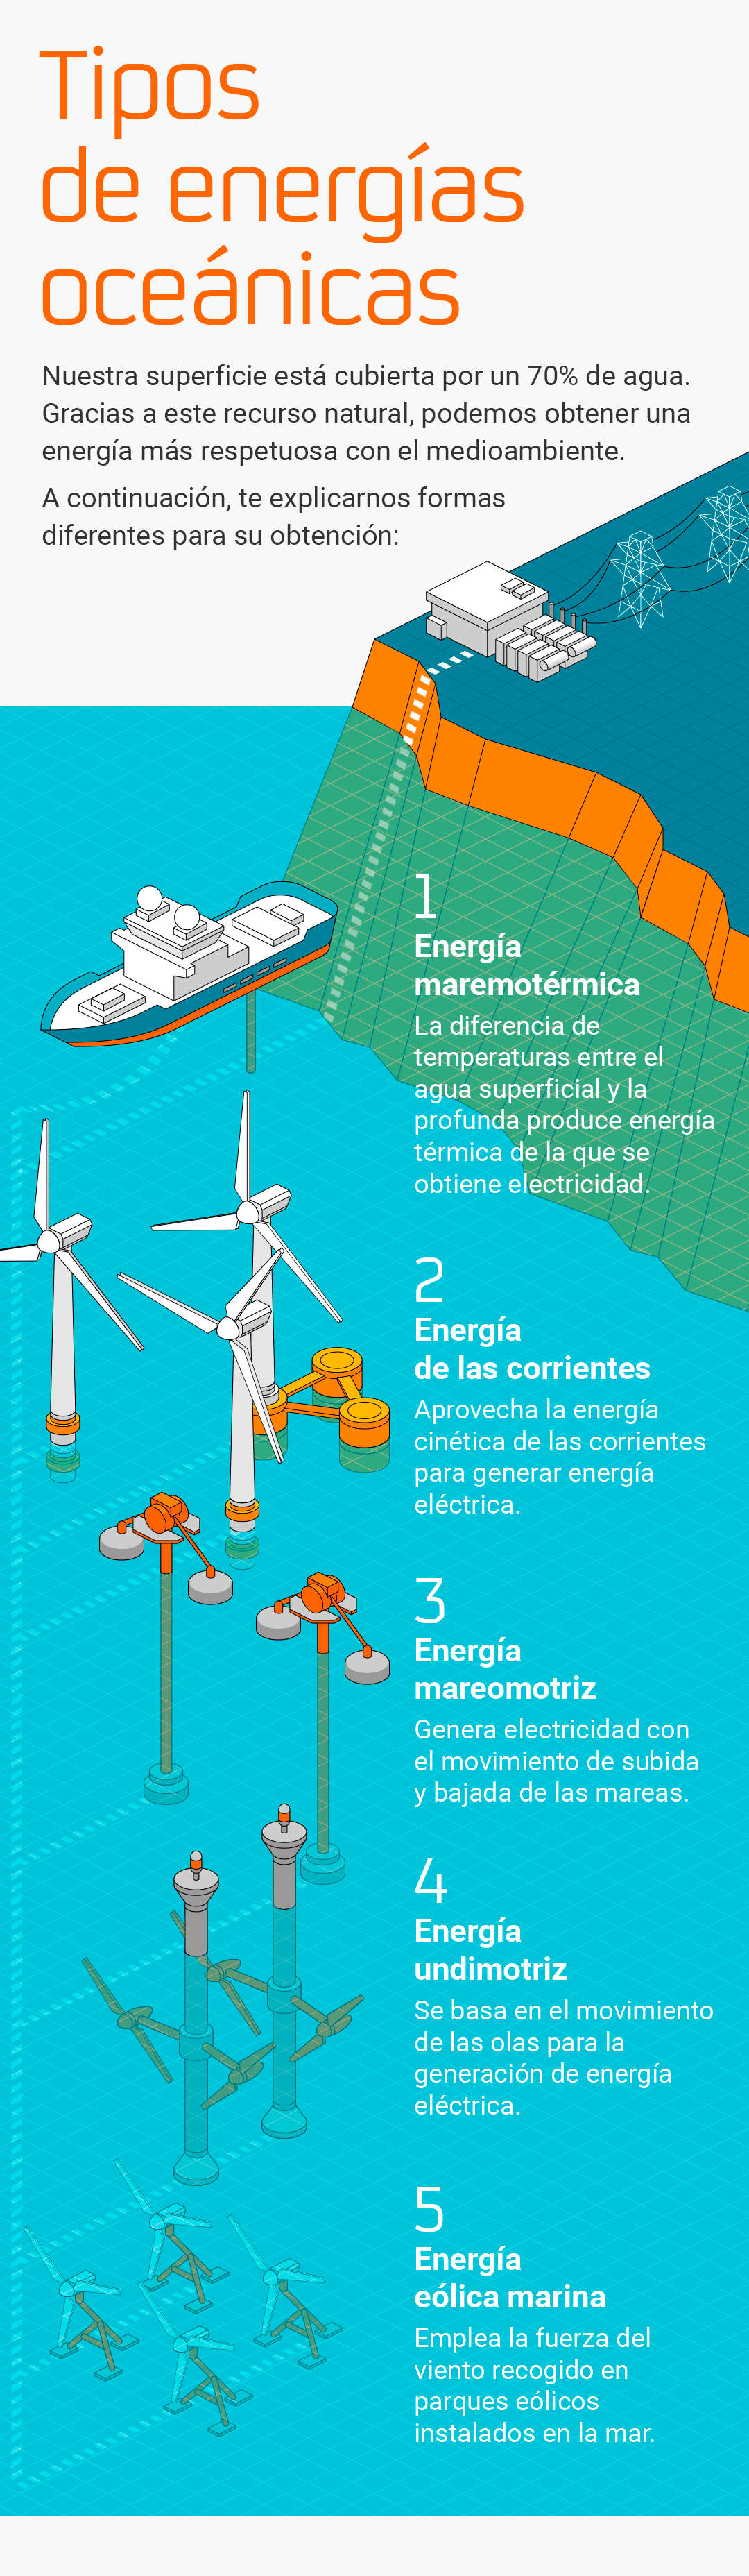 Infografía sobre los Tipos de Energía Oceánica